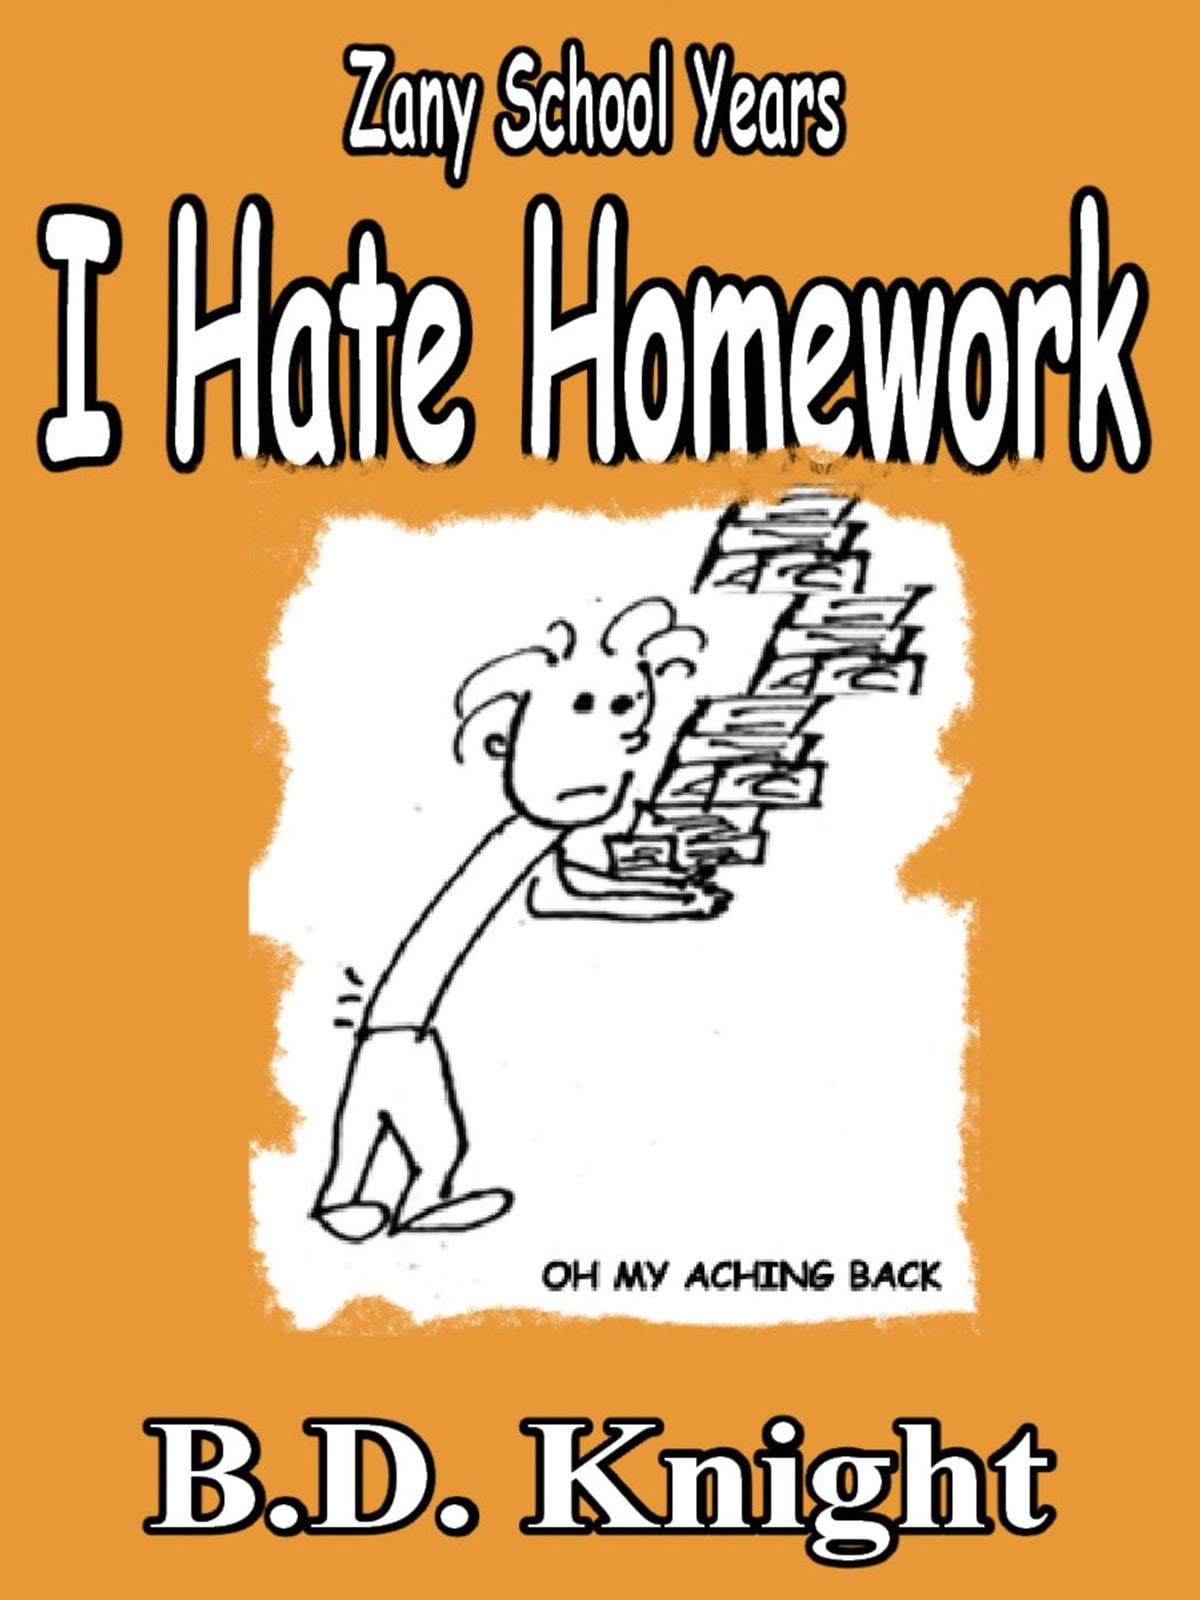 i hate homework by